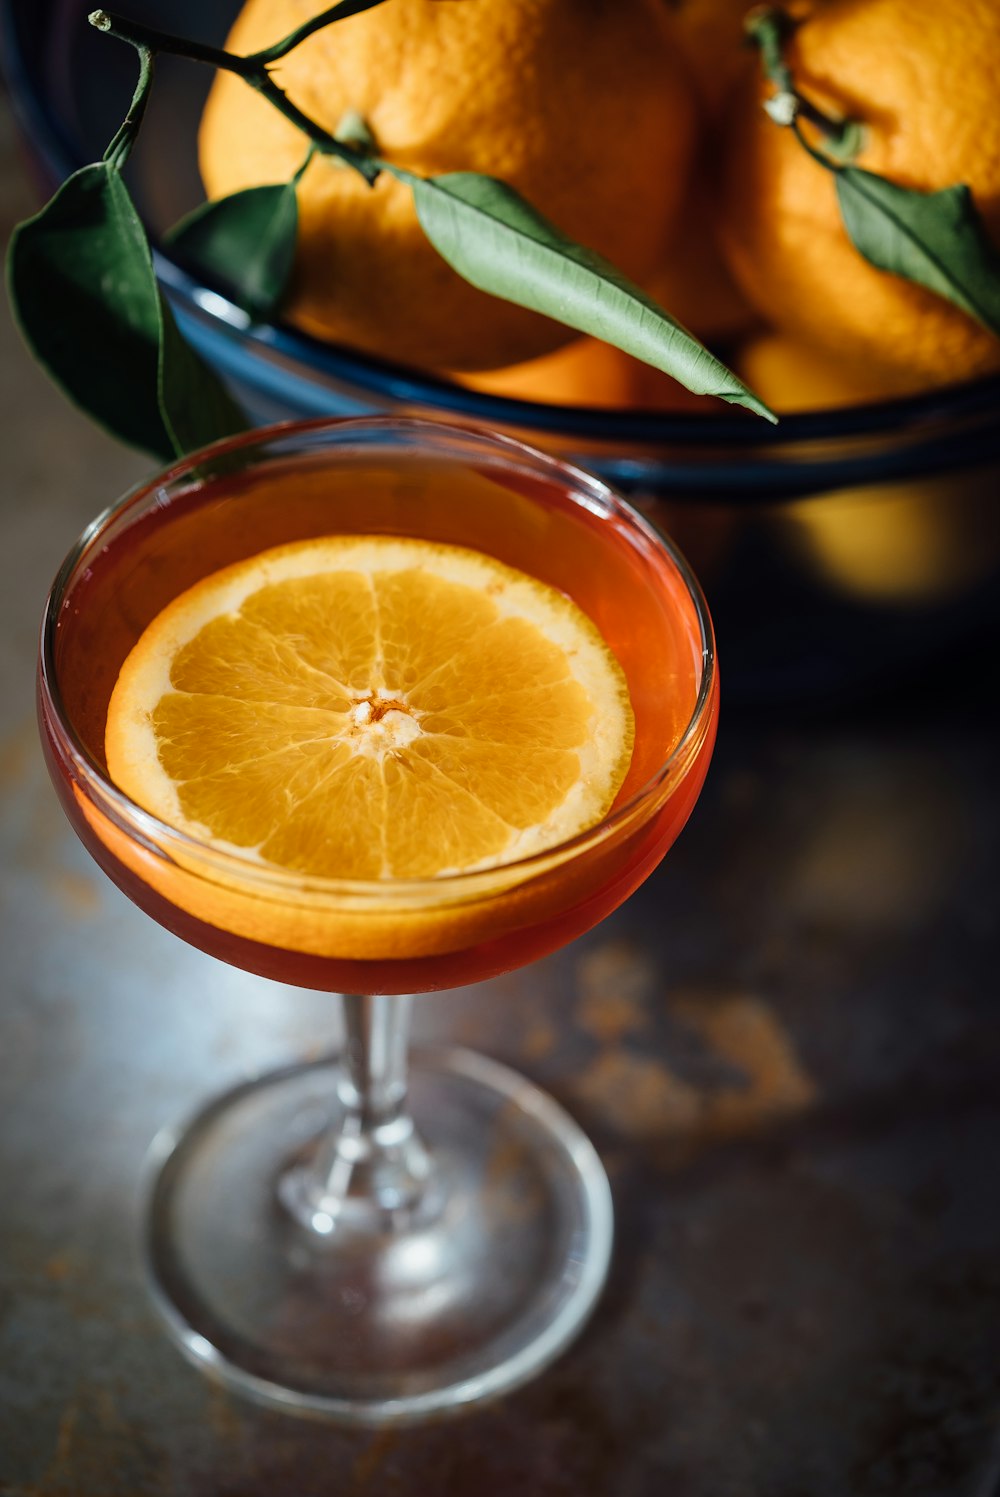 Tranche d’orange dans un verre à vin rempli de liquide orange